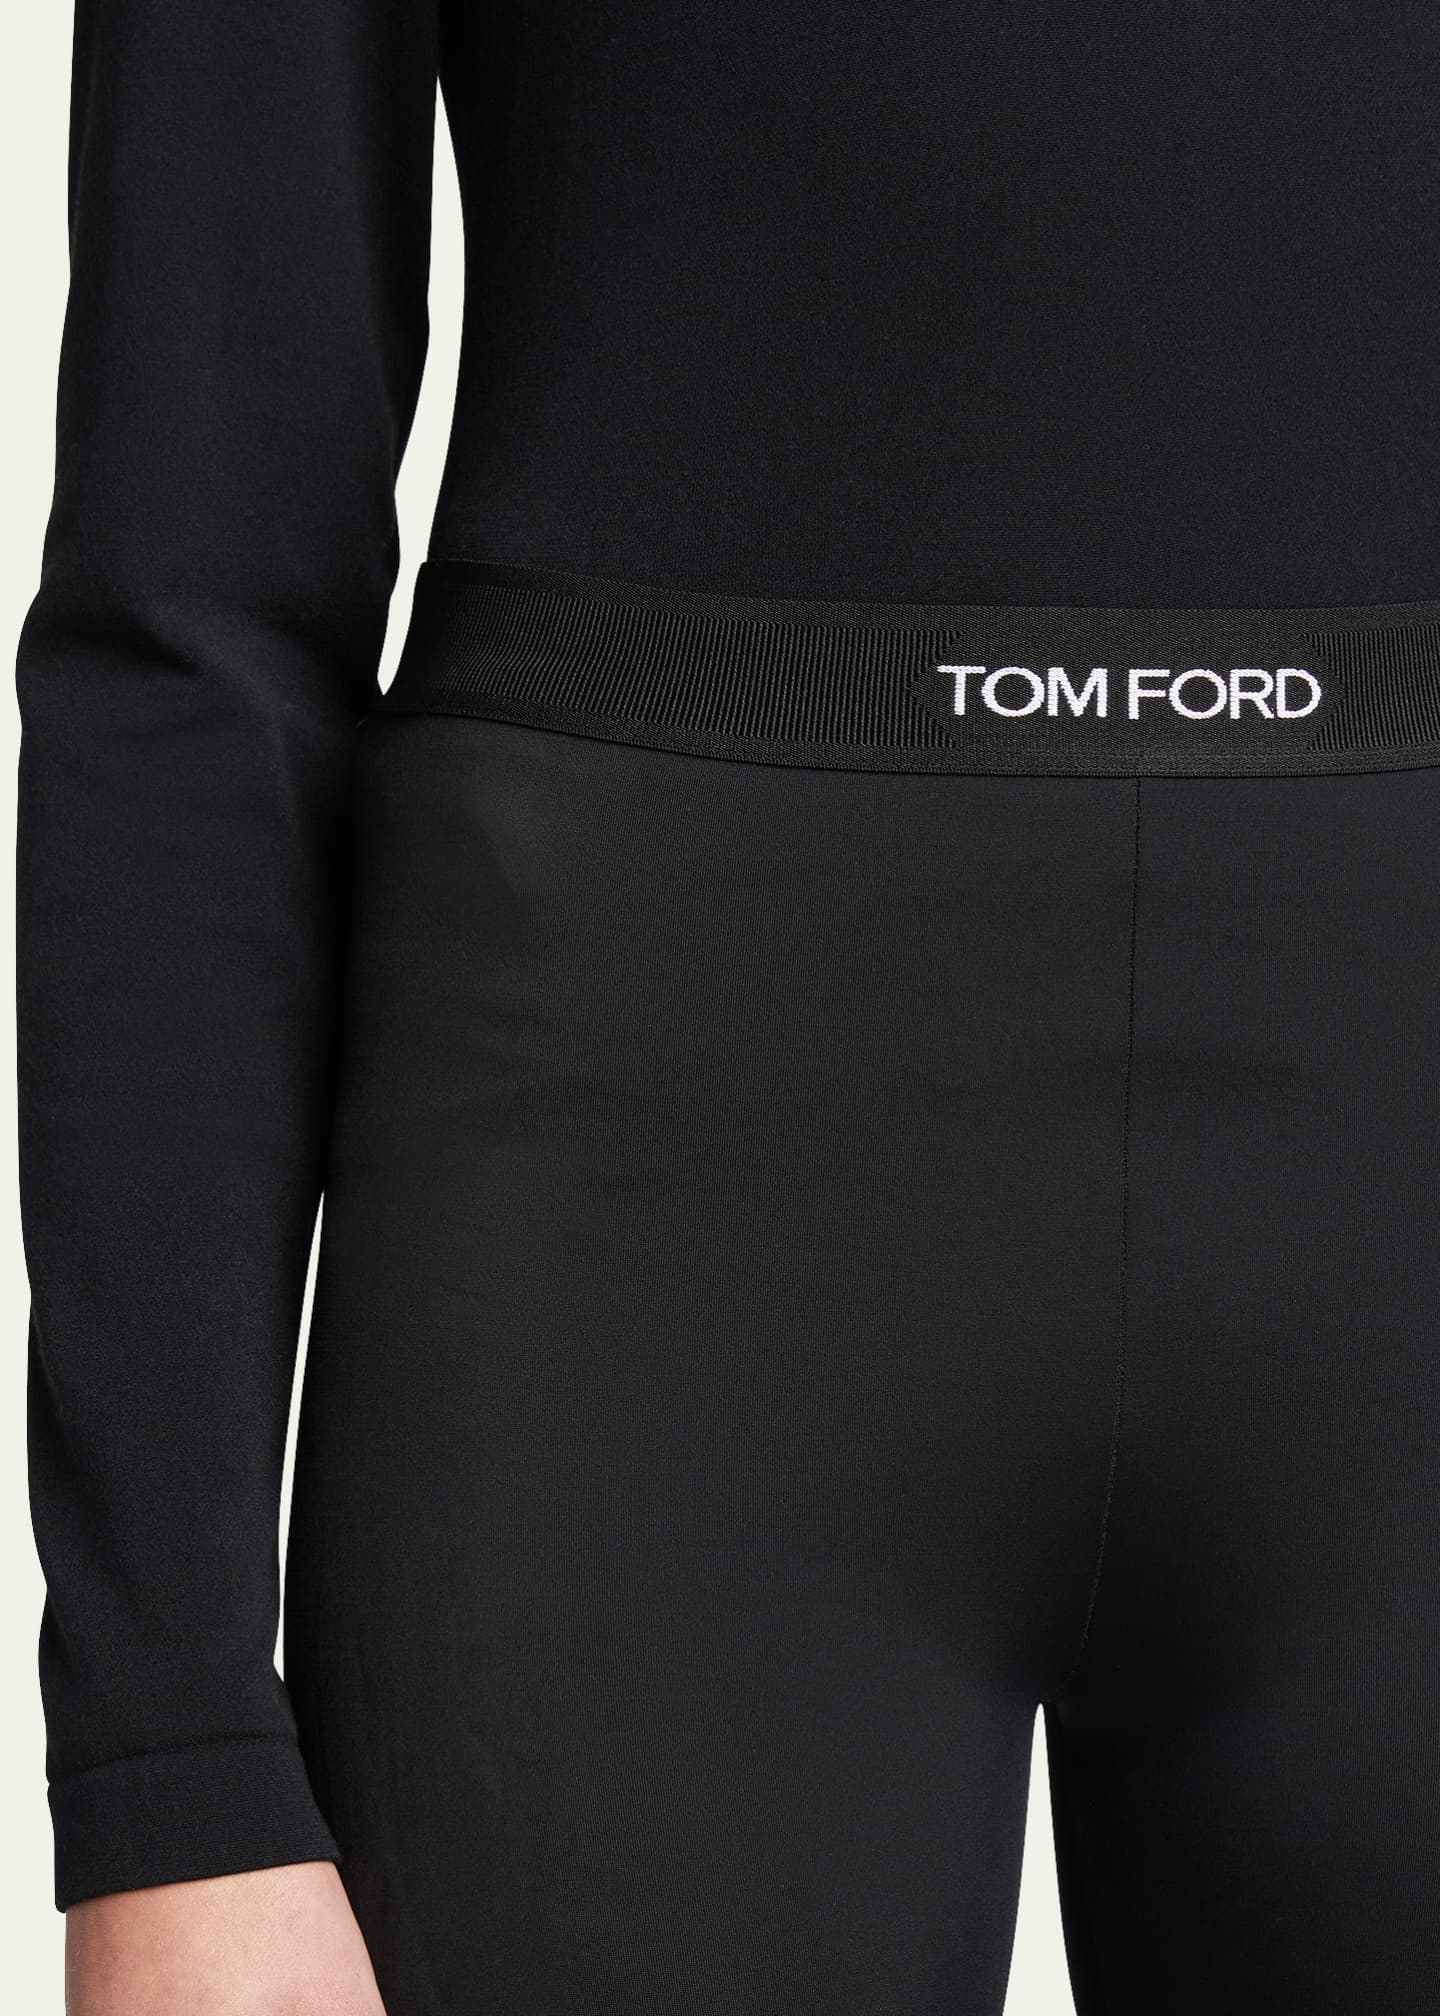 Tom Ford Leggings for Sale